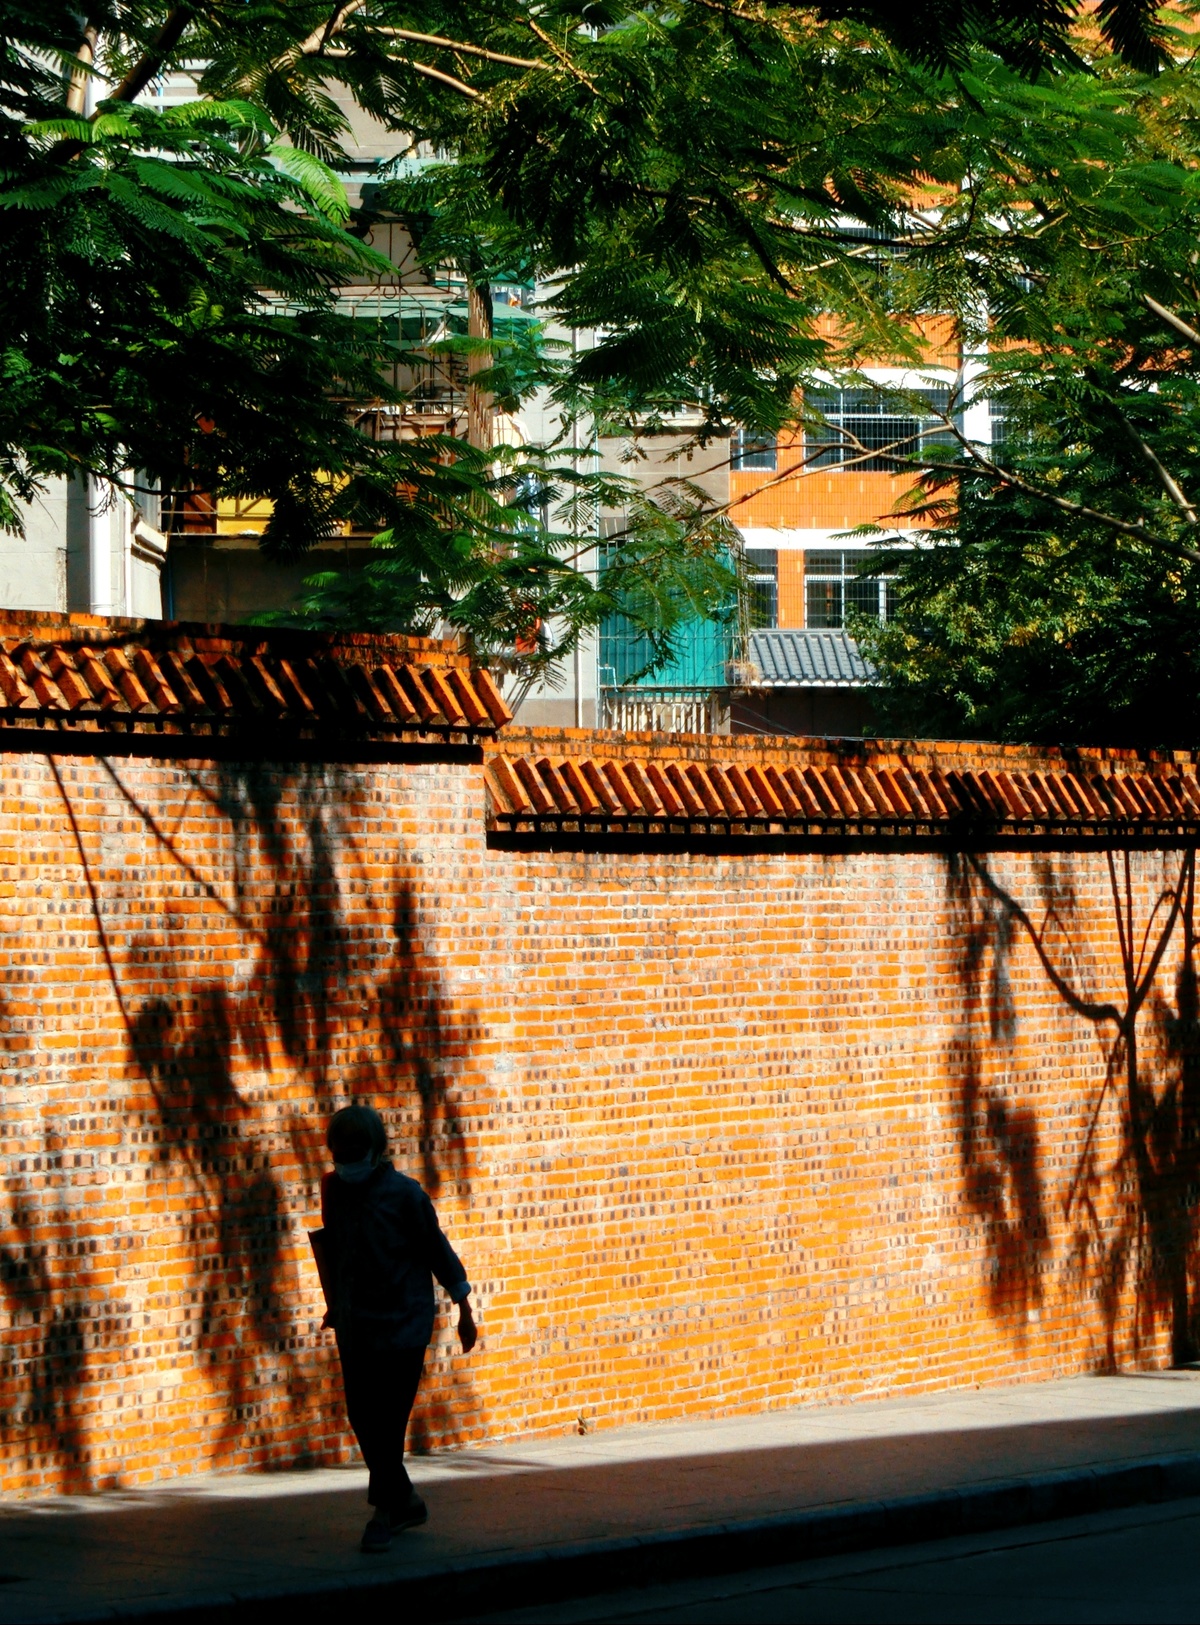 一个人在人行道上 前方有一堵砖墙 墙上有一个人行走的影子。